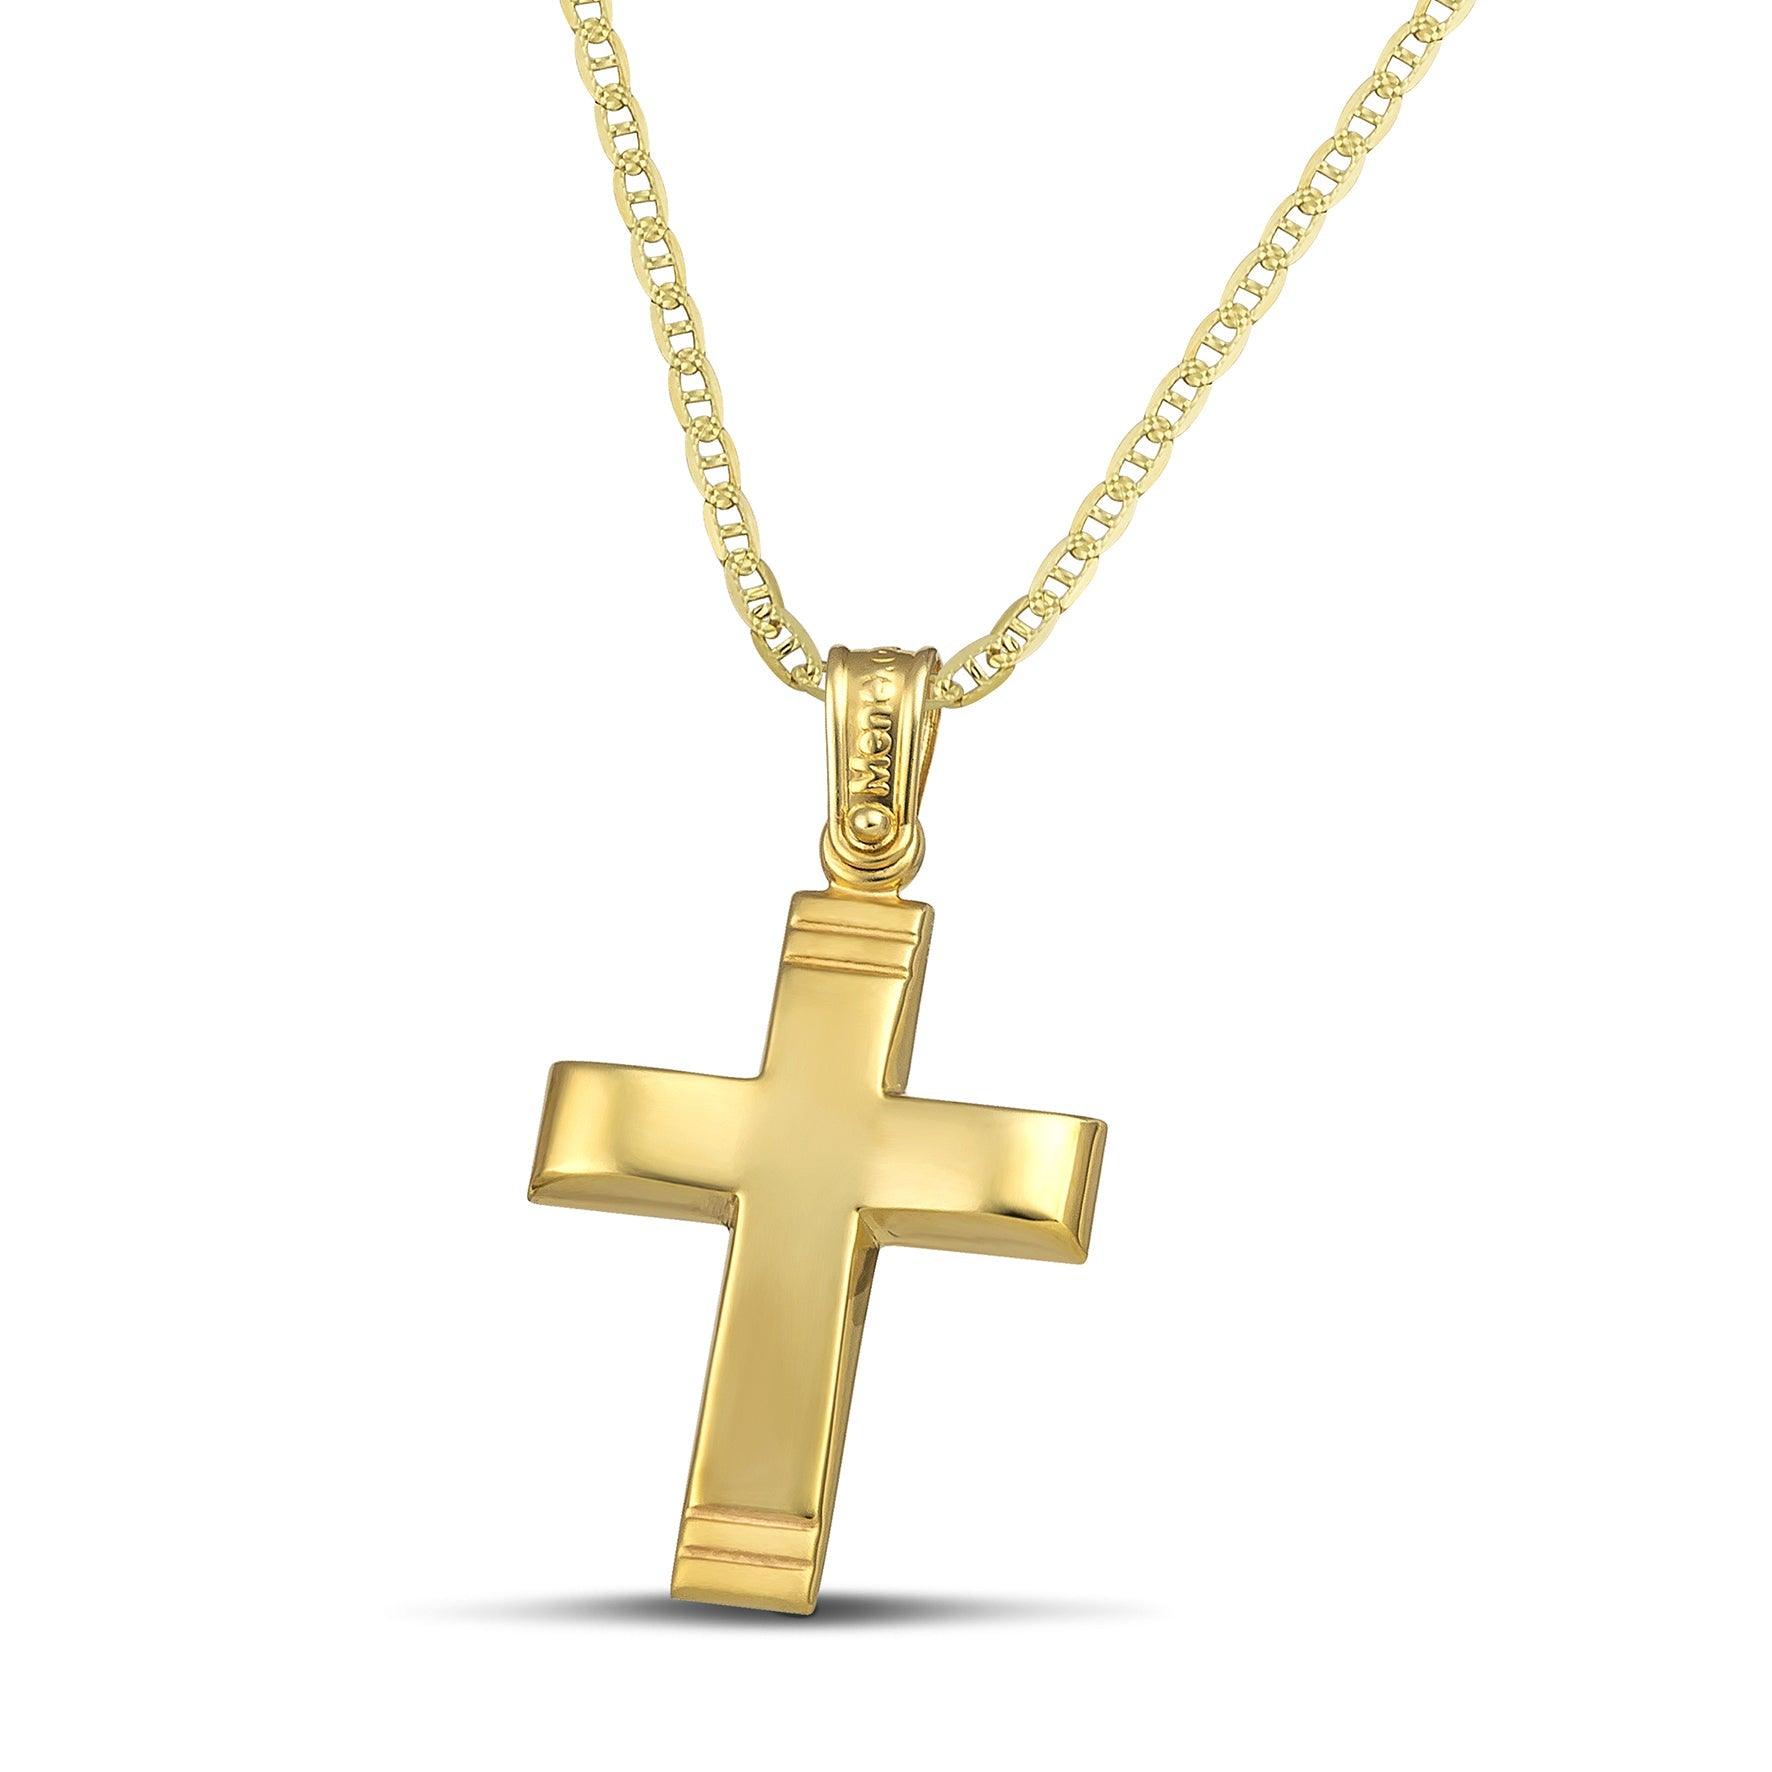 Χρυσός σταυρός Κ14 μίνιμαλ, λουστράτος. Φορεμένος σε «Θ» αλυσίδα.